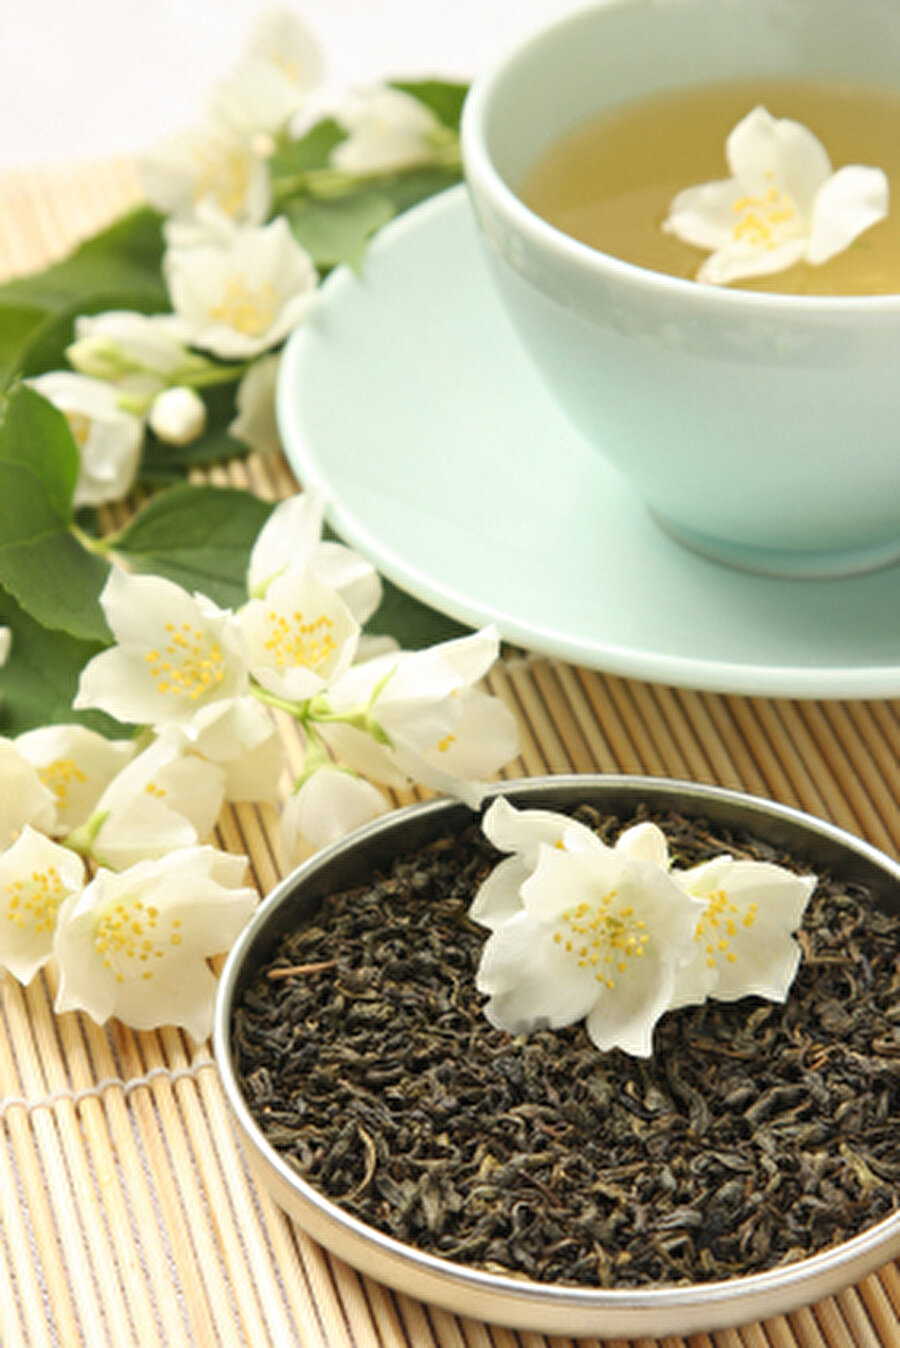 Yasemin Çayı

                                    
Yasemin çayı,kokulu çaylar arasında en popüler olanıdır.Yeşil çay ve iki farklı yasemin çiçeğini karışımından üretilir.Yasemin çayını sağlık üzerinde olumlu etkileri yeşil çaya benzer ve daha güçlüdür.Bunun yanında çiçeğe koku veren maddelerle de sinir sistemini ve ruhsal durumu olumlu yönde etkiler.Ferahlatıcı,uyarıcı ve dinlendiricidir.

Yasemin çayı parasempatik sinir sistemi aktivitesini artırır.Kalp atım hızını düşürür ve gevşetici ilaçlara benzer,sakinleştirici antistres etki gösterir.Bileşimin bulunan linanool,kafeinin merkezi sinir sistemindeki aşırı uyarıcı etkisini baskılamaktadır.Kas spazmını çözücü etkisiyle çin tıbbında barsak fonkiyonlarını düzenlemek içinde kullanılmaktadır.Ruhsal durumu ölçen testlerde kişiyi psikolojik olarak rahatlatan yasemin kokusunun negatif bulguları azalttığı saptanmıştır.


                                